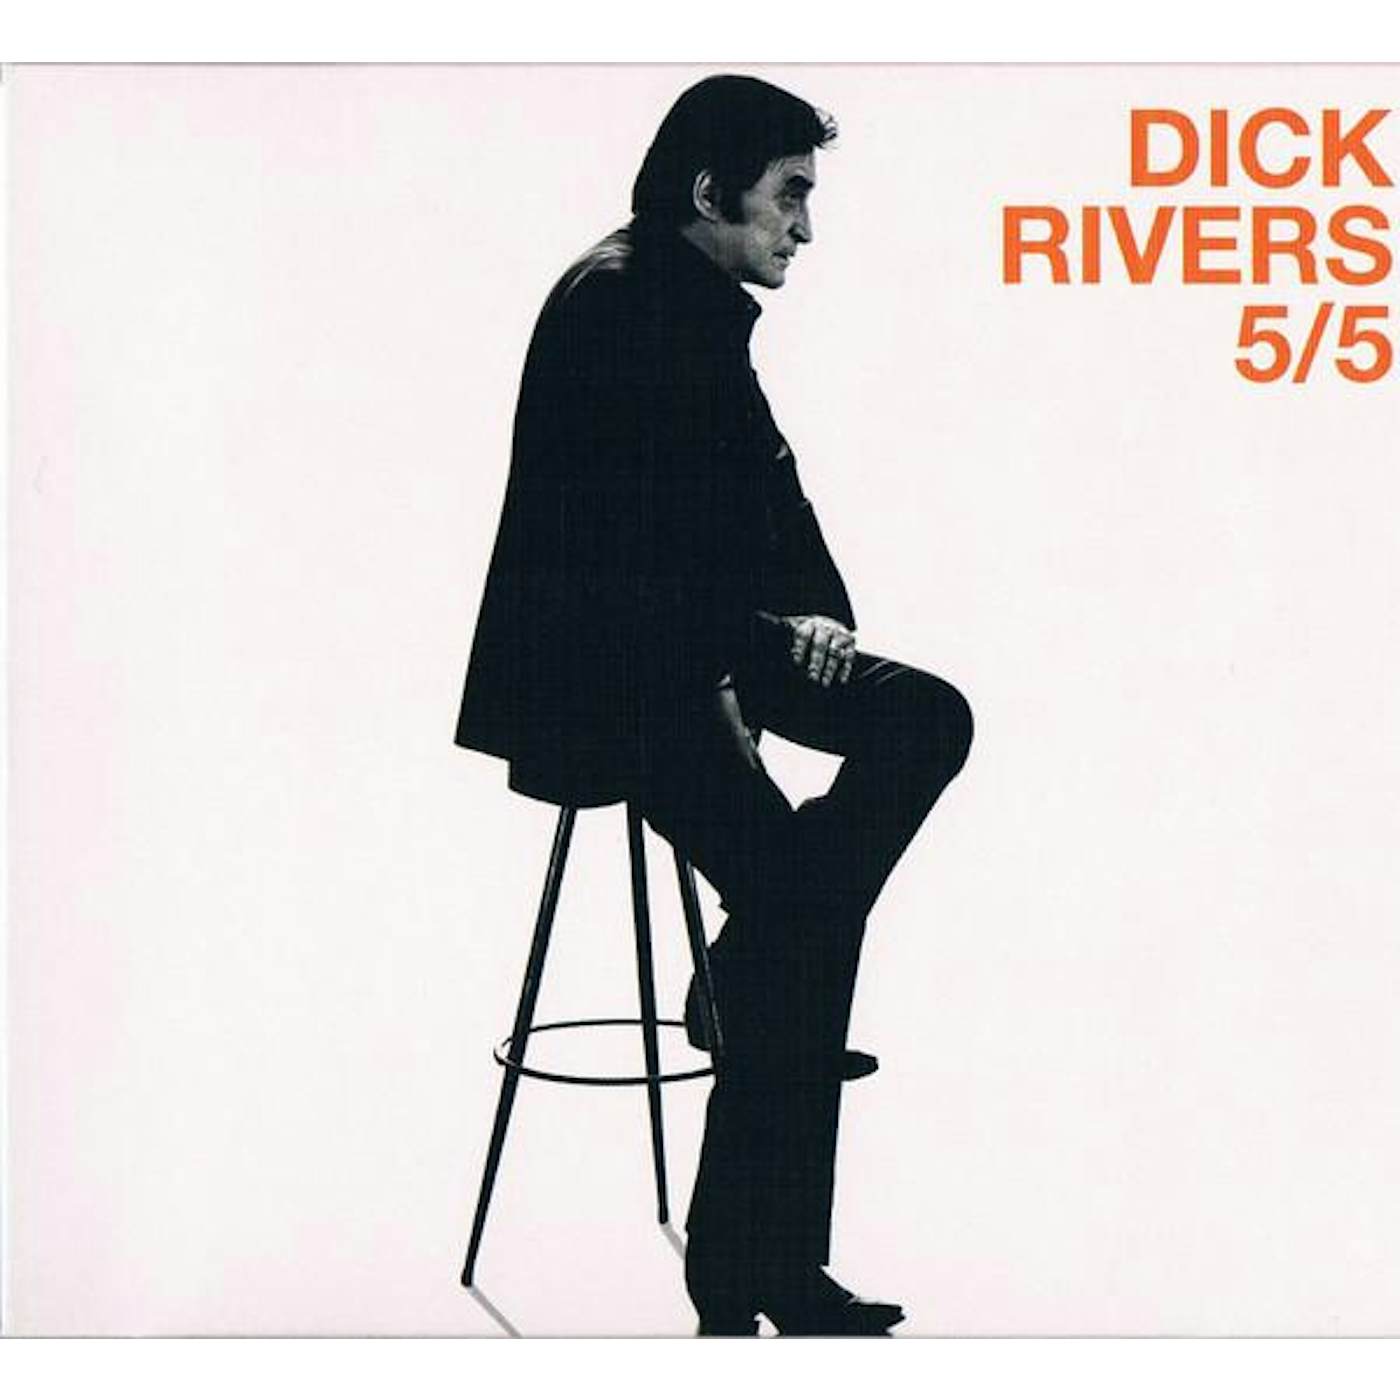 Dick Rivers 5/5 CD